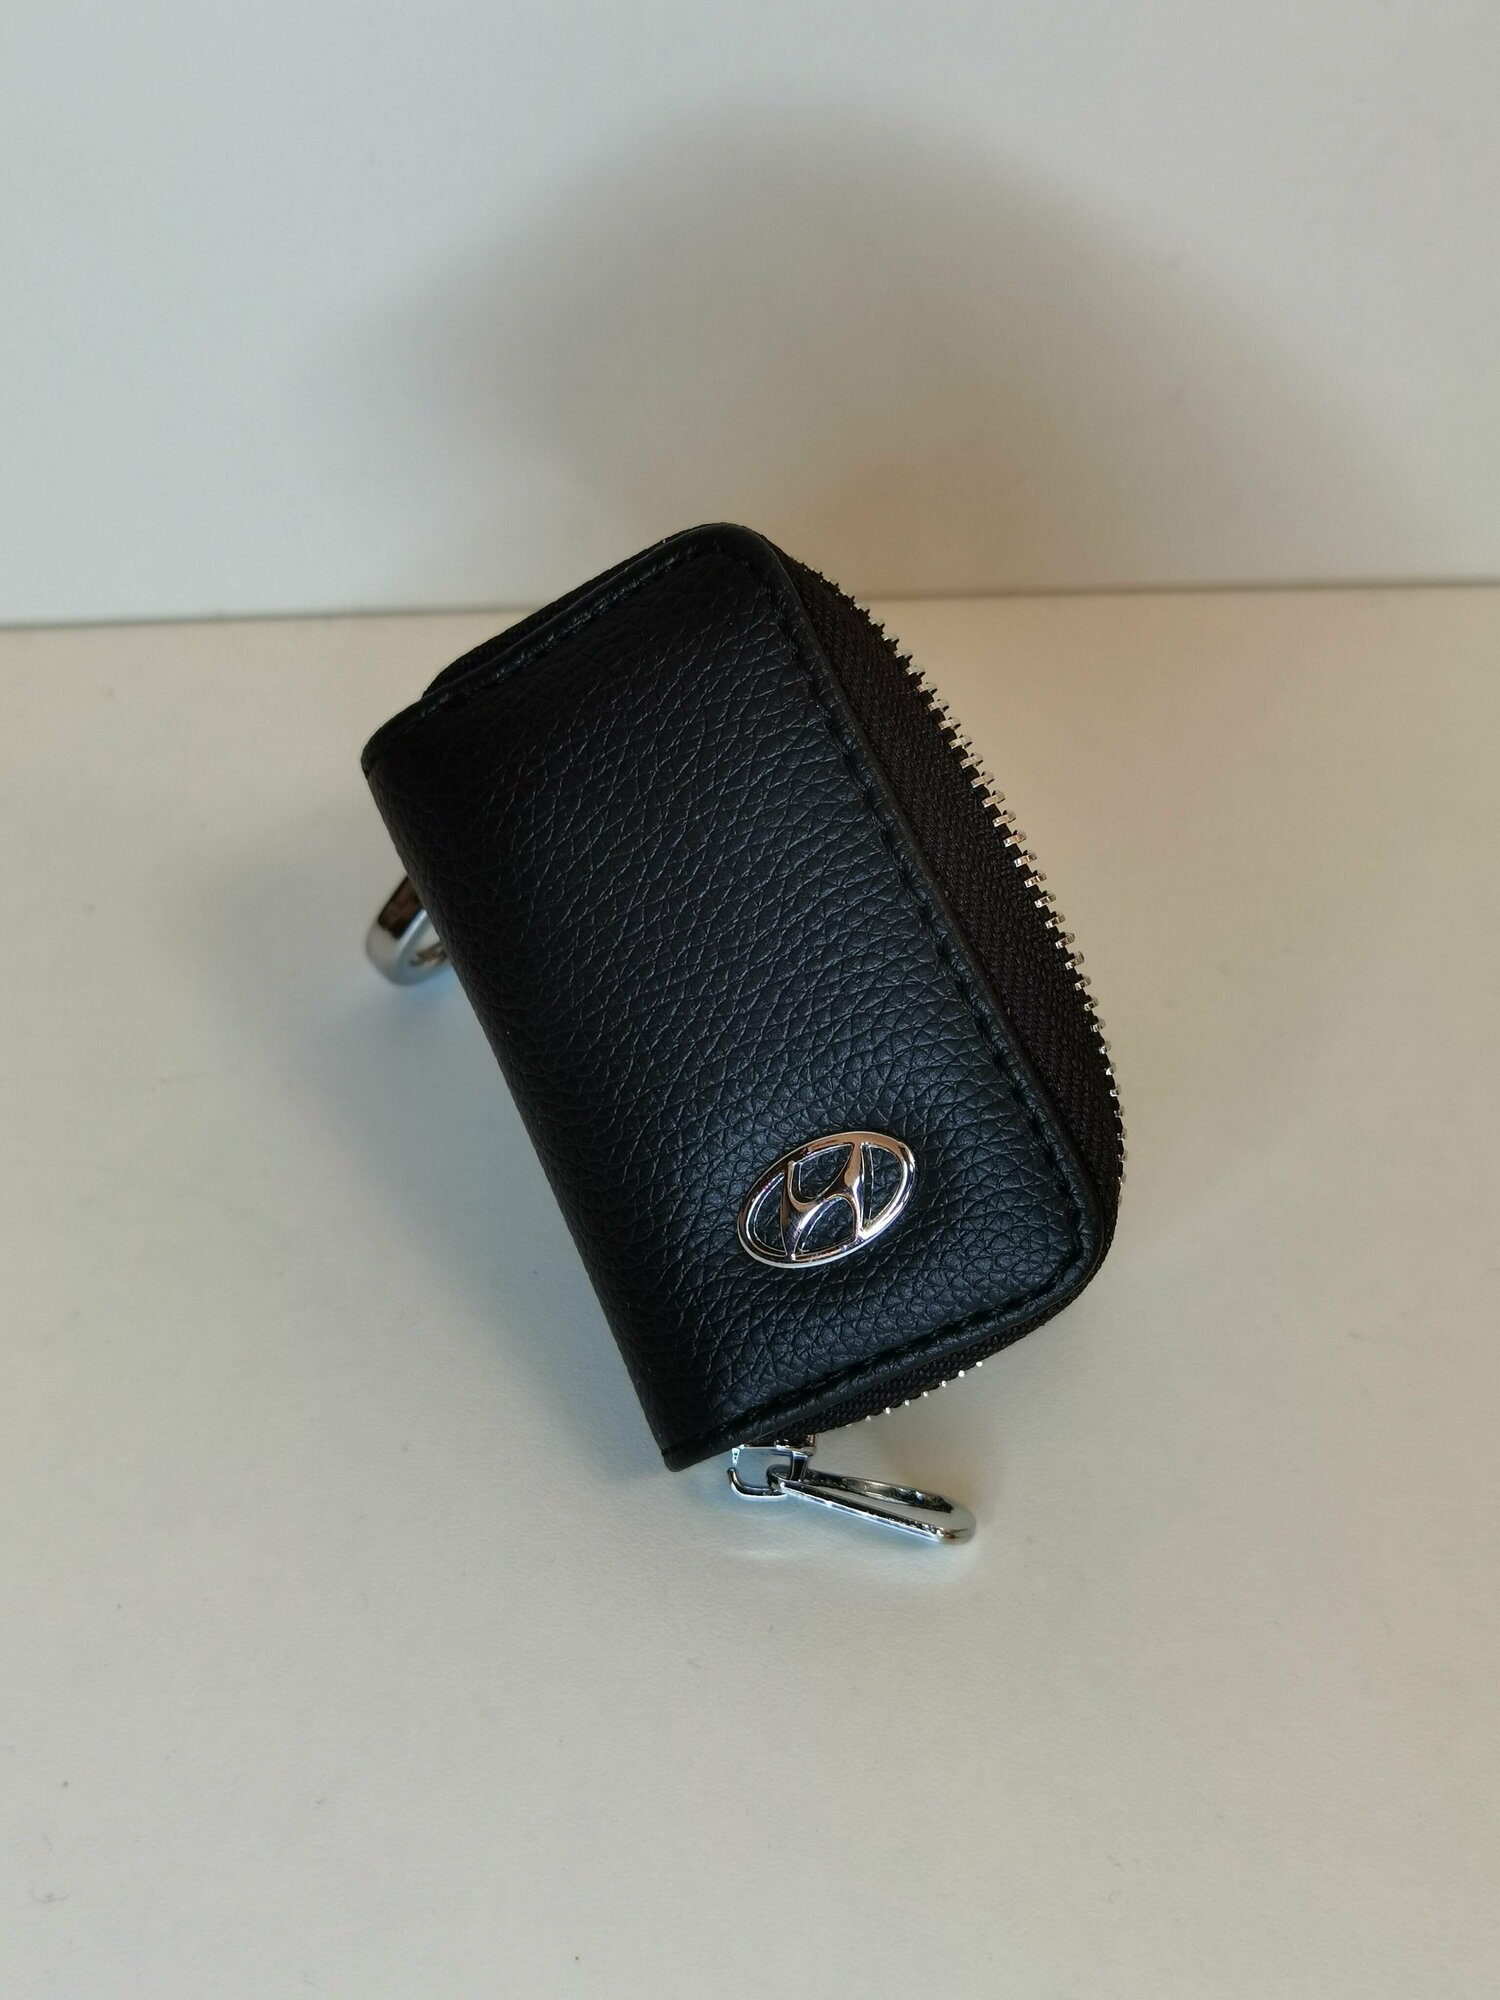 Кожаный чехол-брелок для ключей автомобилей Hyundai Ключница Совместим с моделями автомобилей Hyundai: Elantra Sonata Tucson и другими